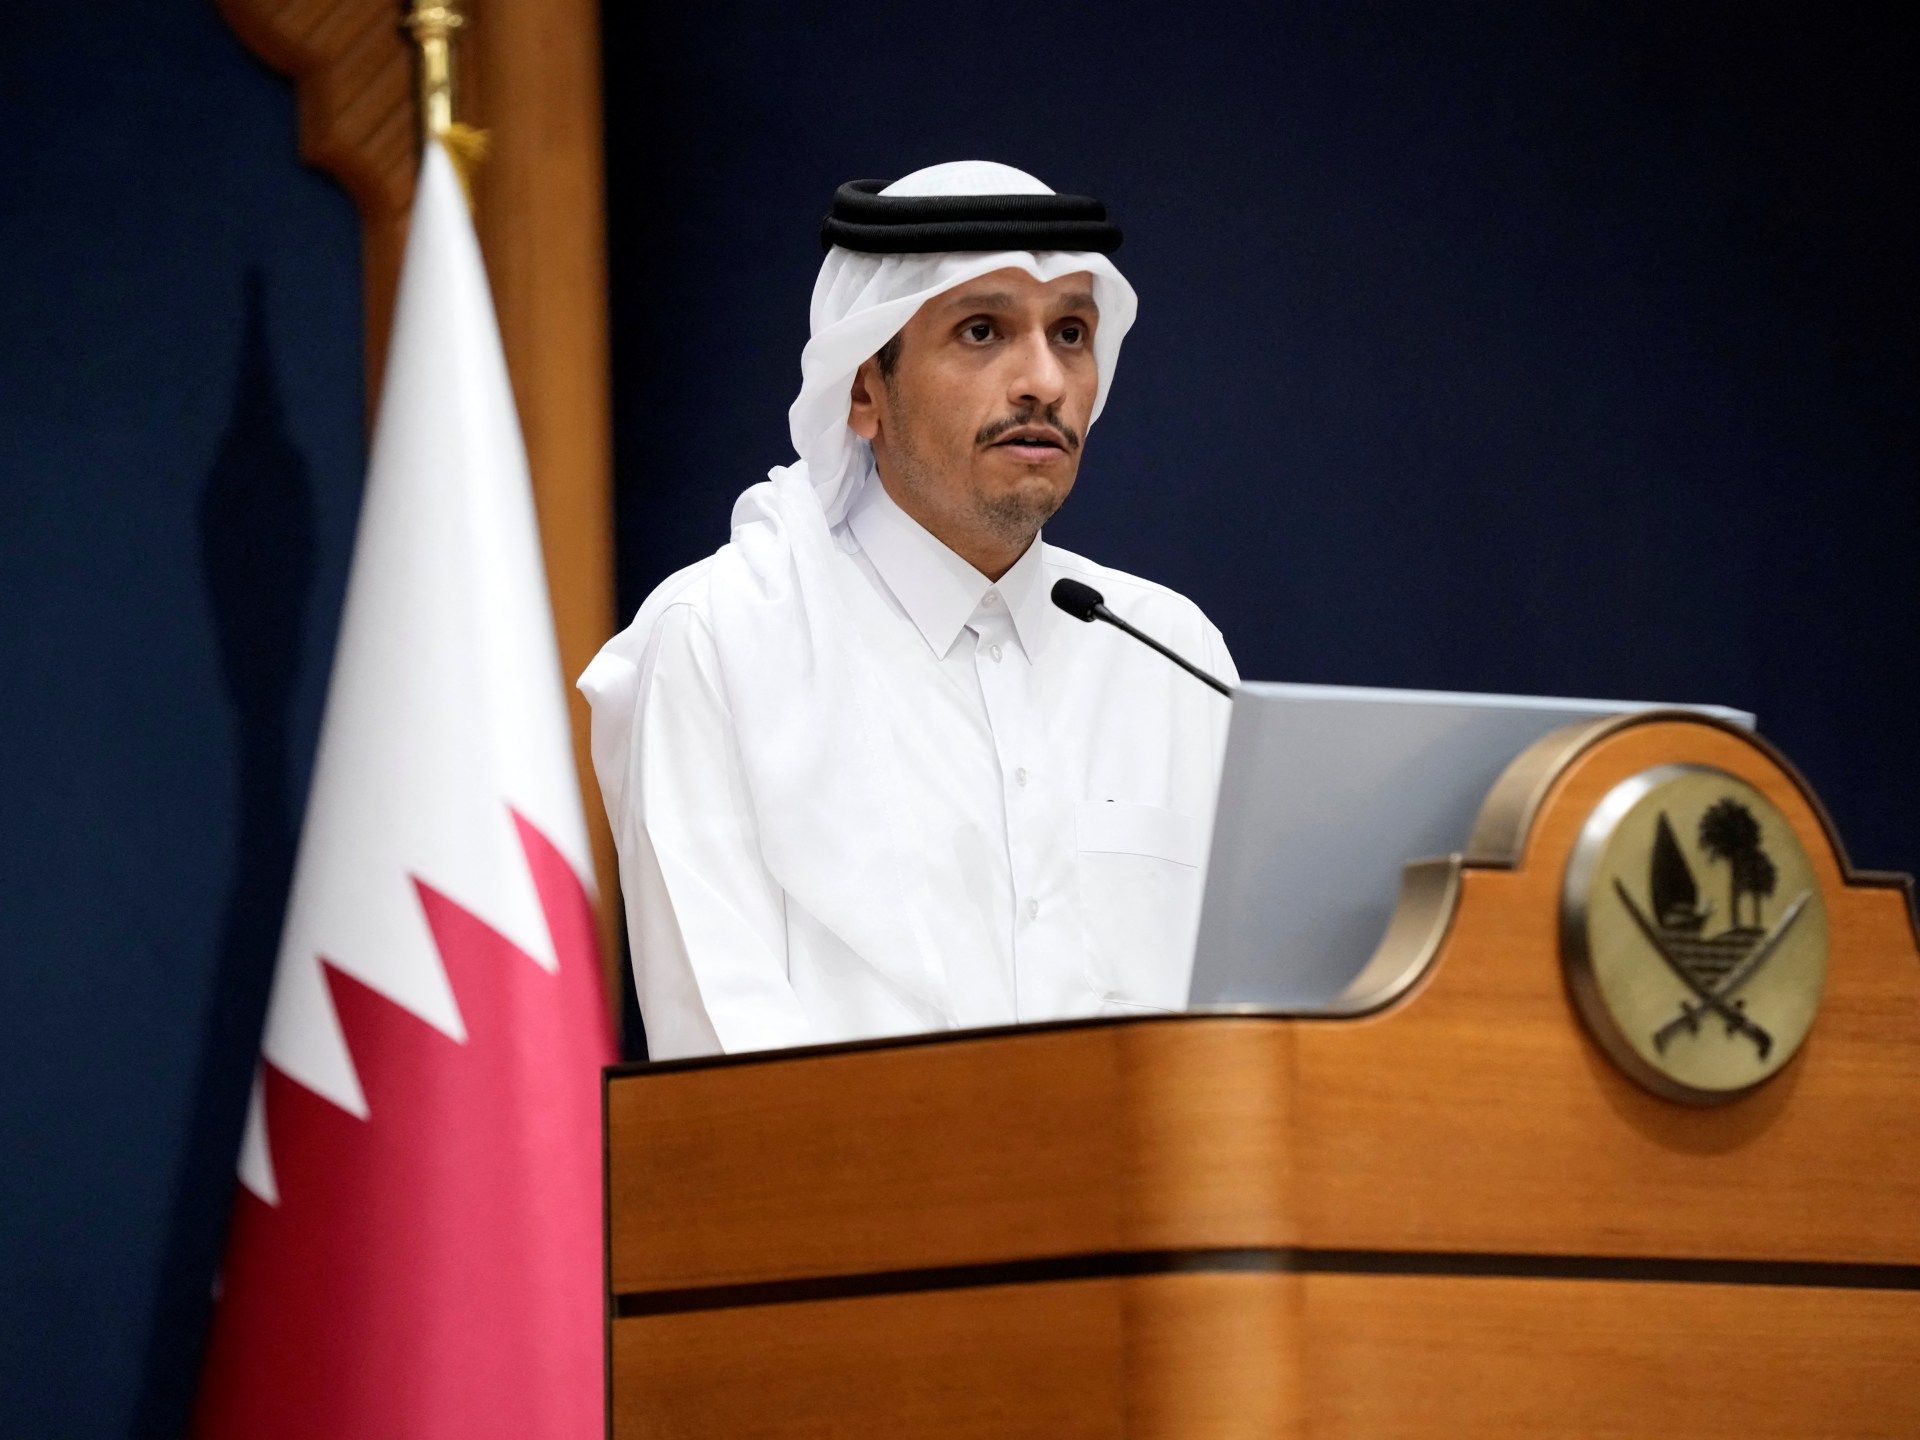 قطر تطالب بتحقيق دولي فوري في جرائم الاحتلال بغزة | أخبار – البوكس نيوز